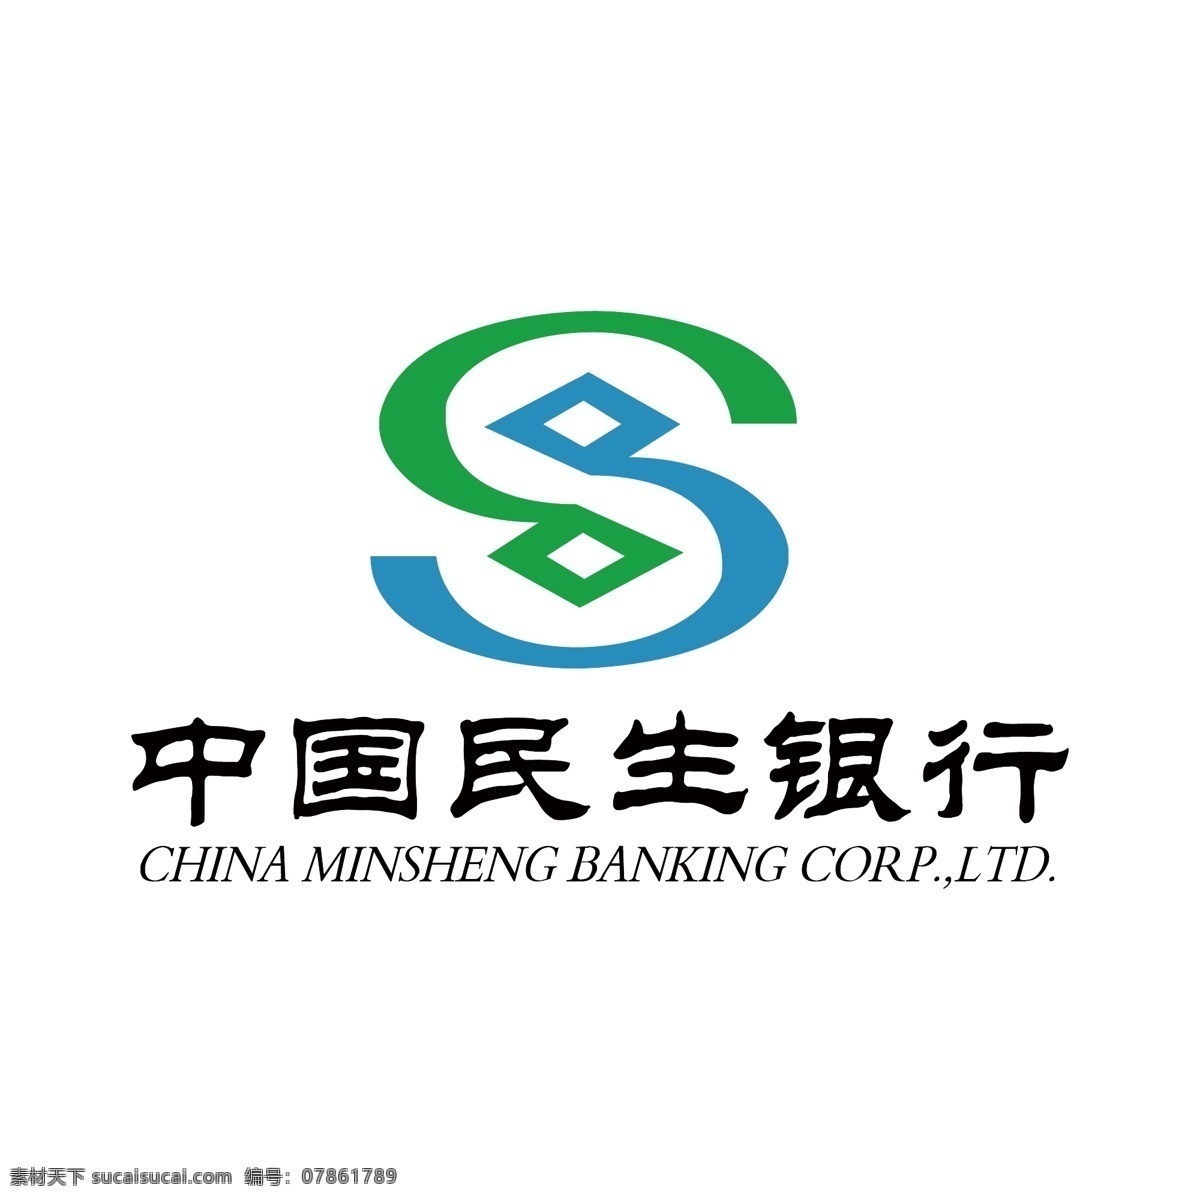 中国民生银行 标志 民生银行标志 民生银行 logo 银行标志 银行logo